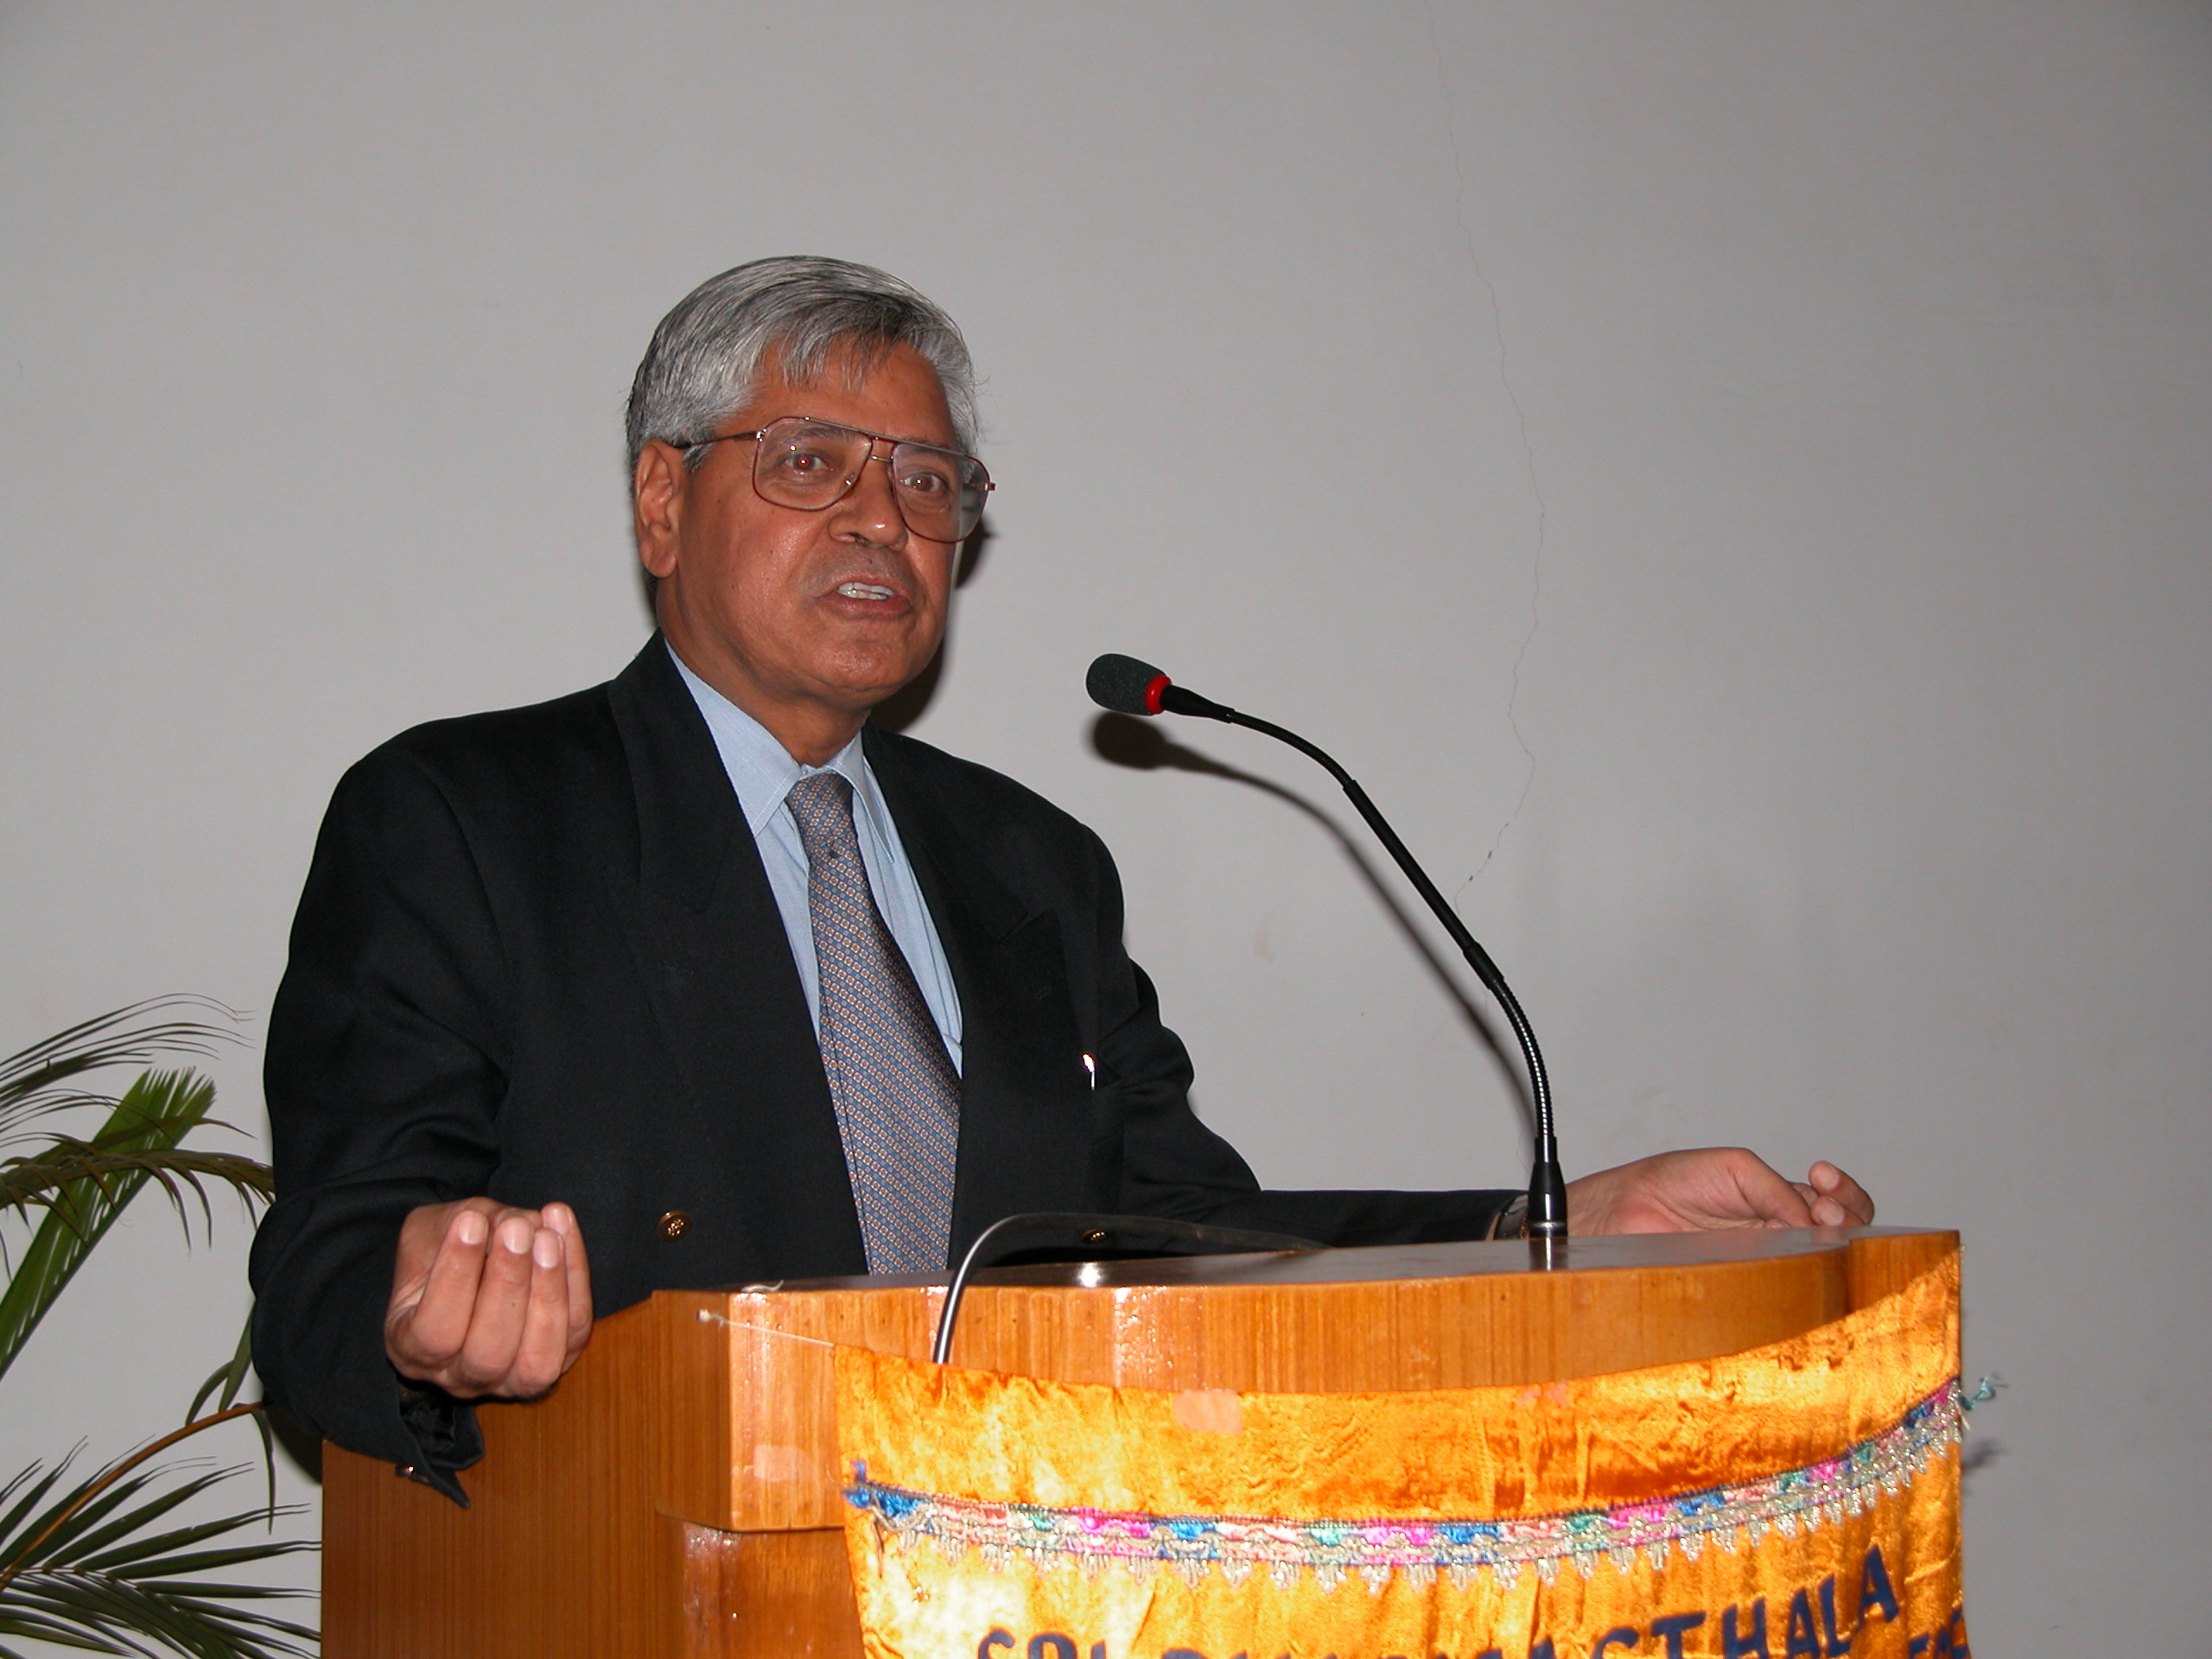 Dr. Satish Kalra speaking at a podium